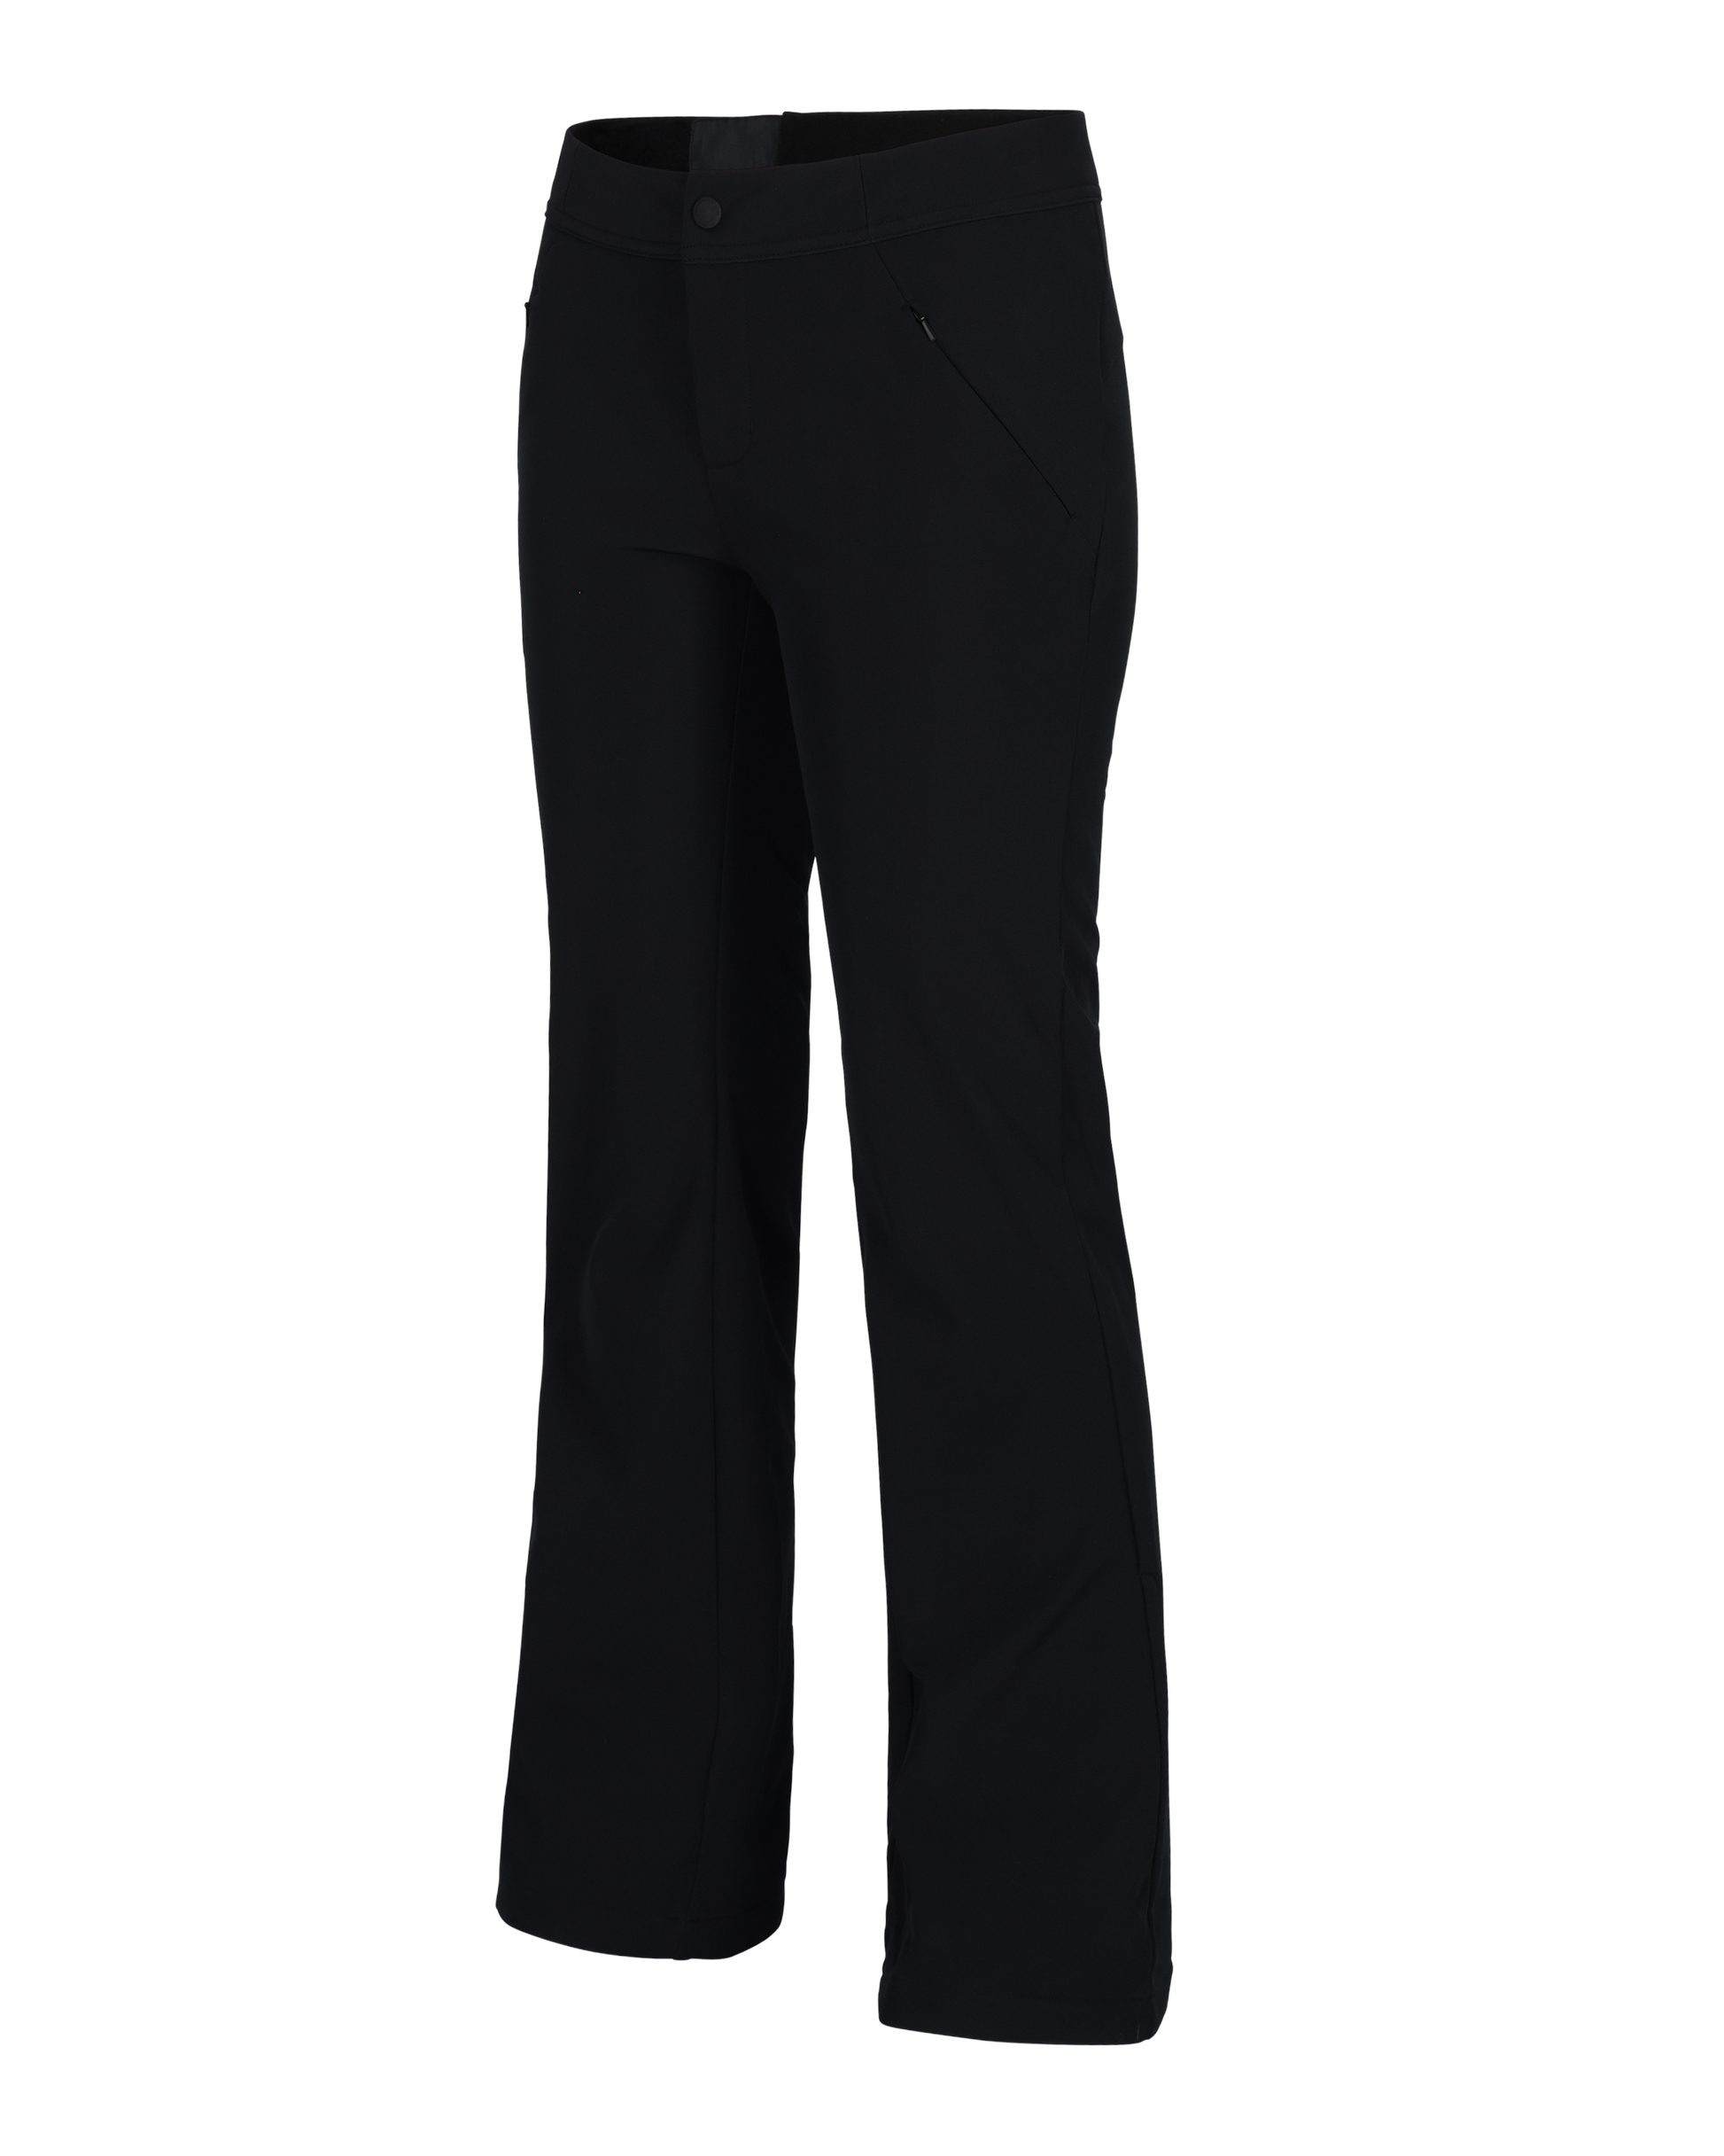 Pockets For Women - Peter Storm Women's Storm Waterproof Trousers, Black